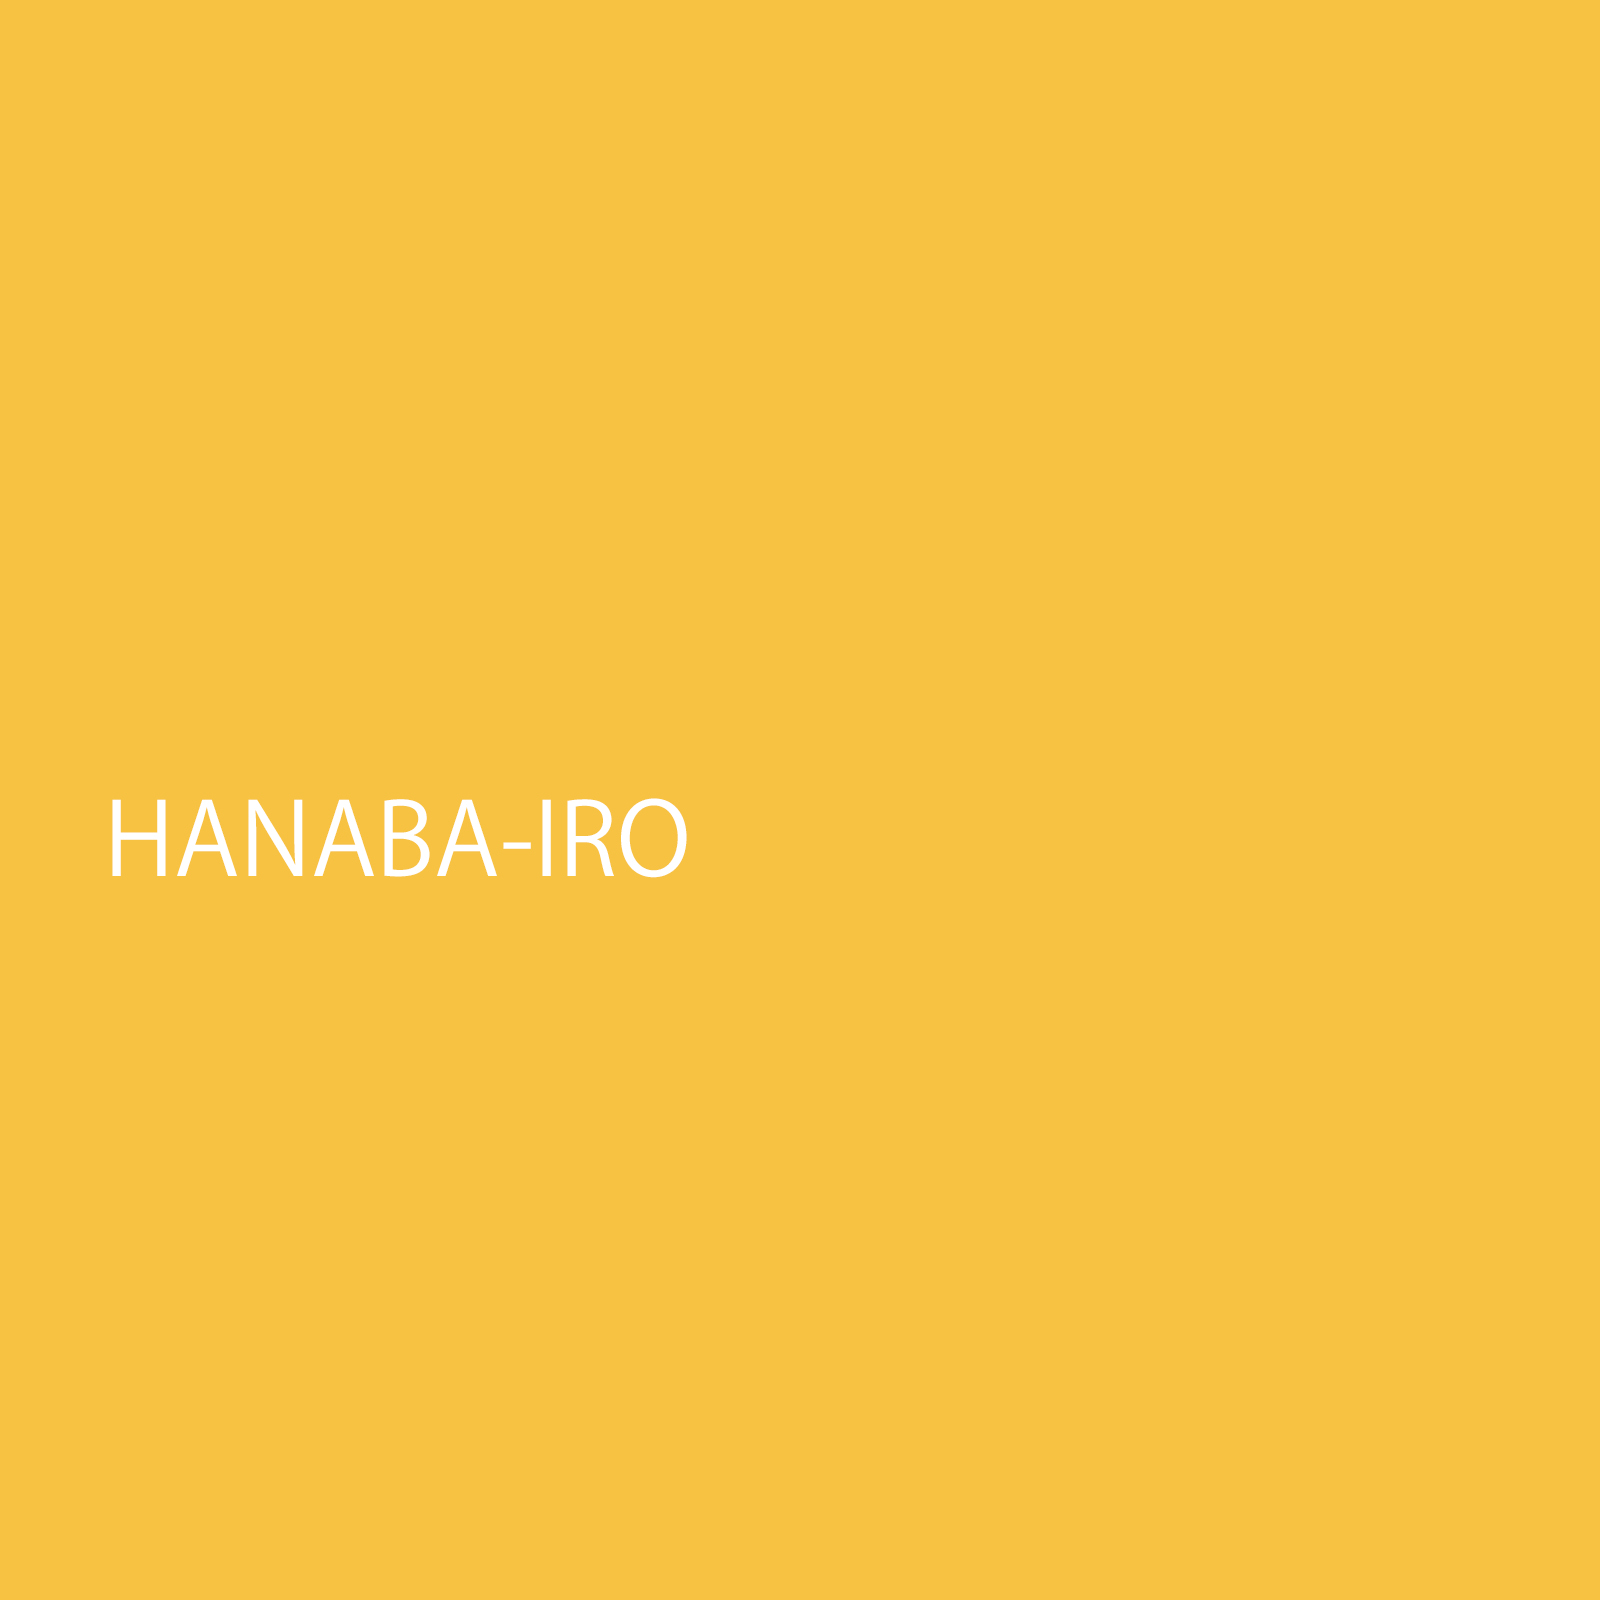 hanabairo.jpg